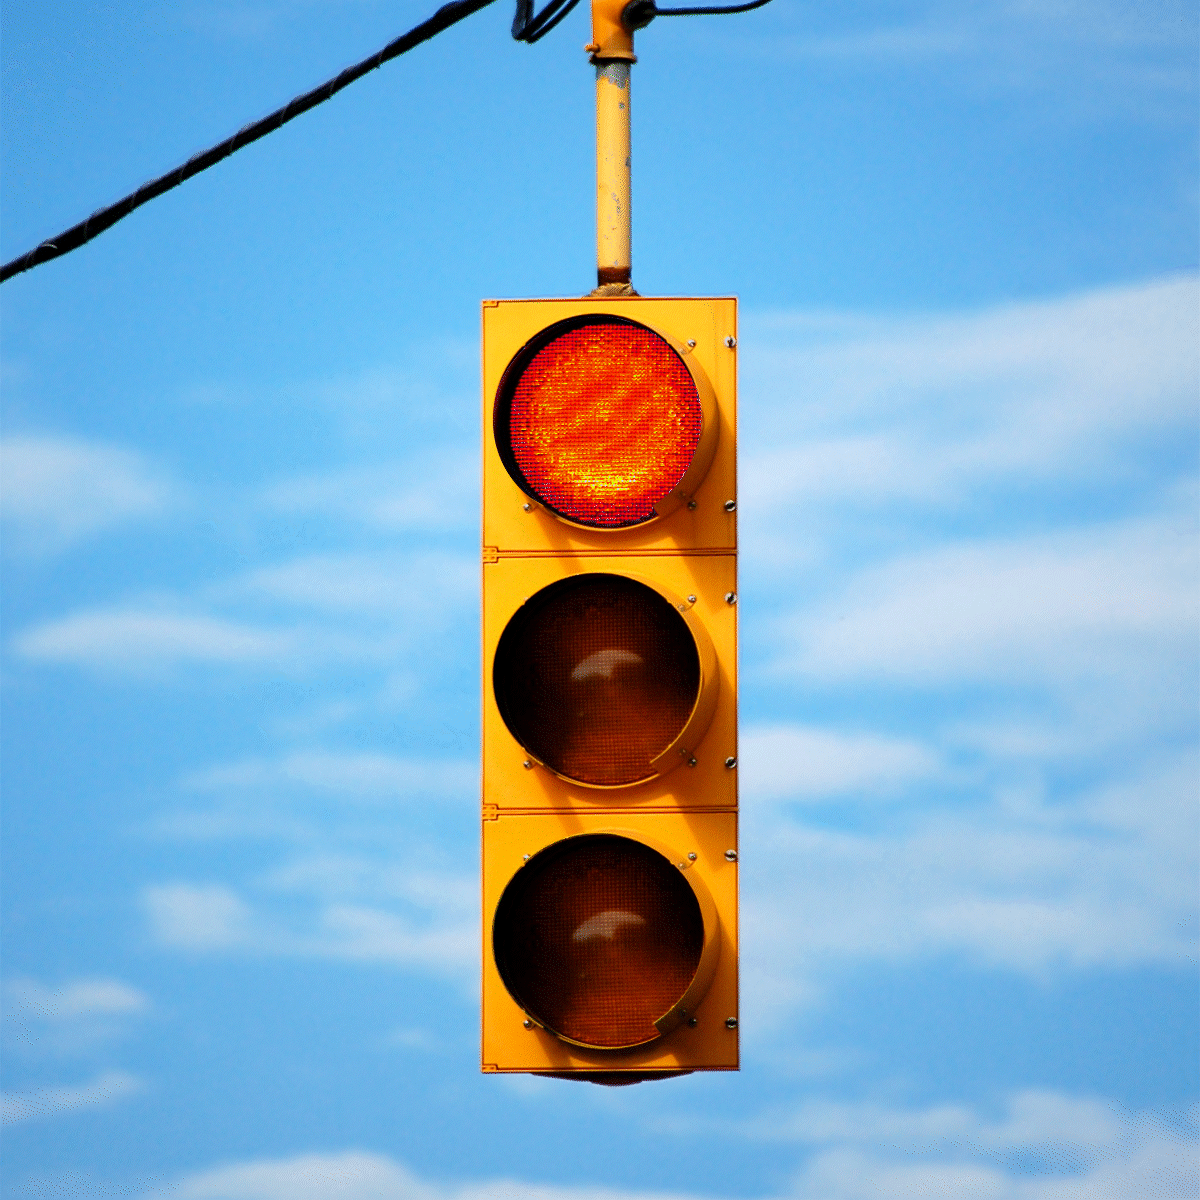 traffic lights red